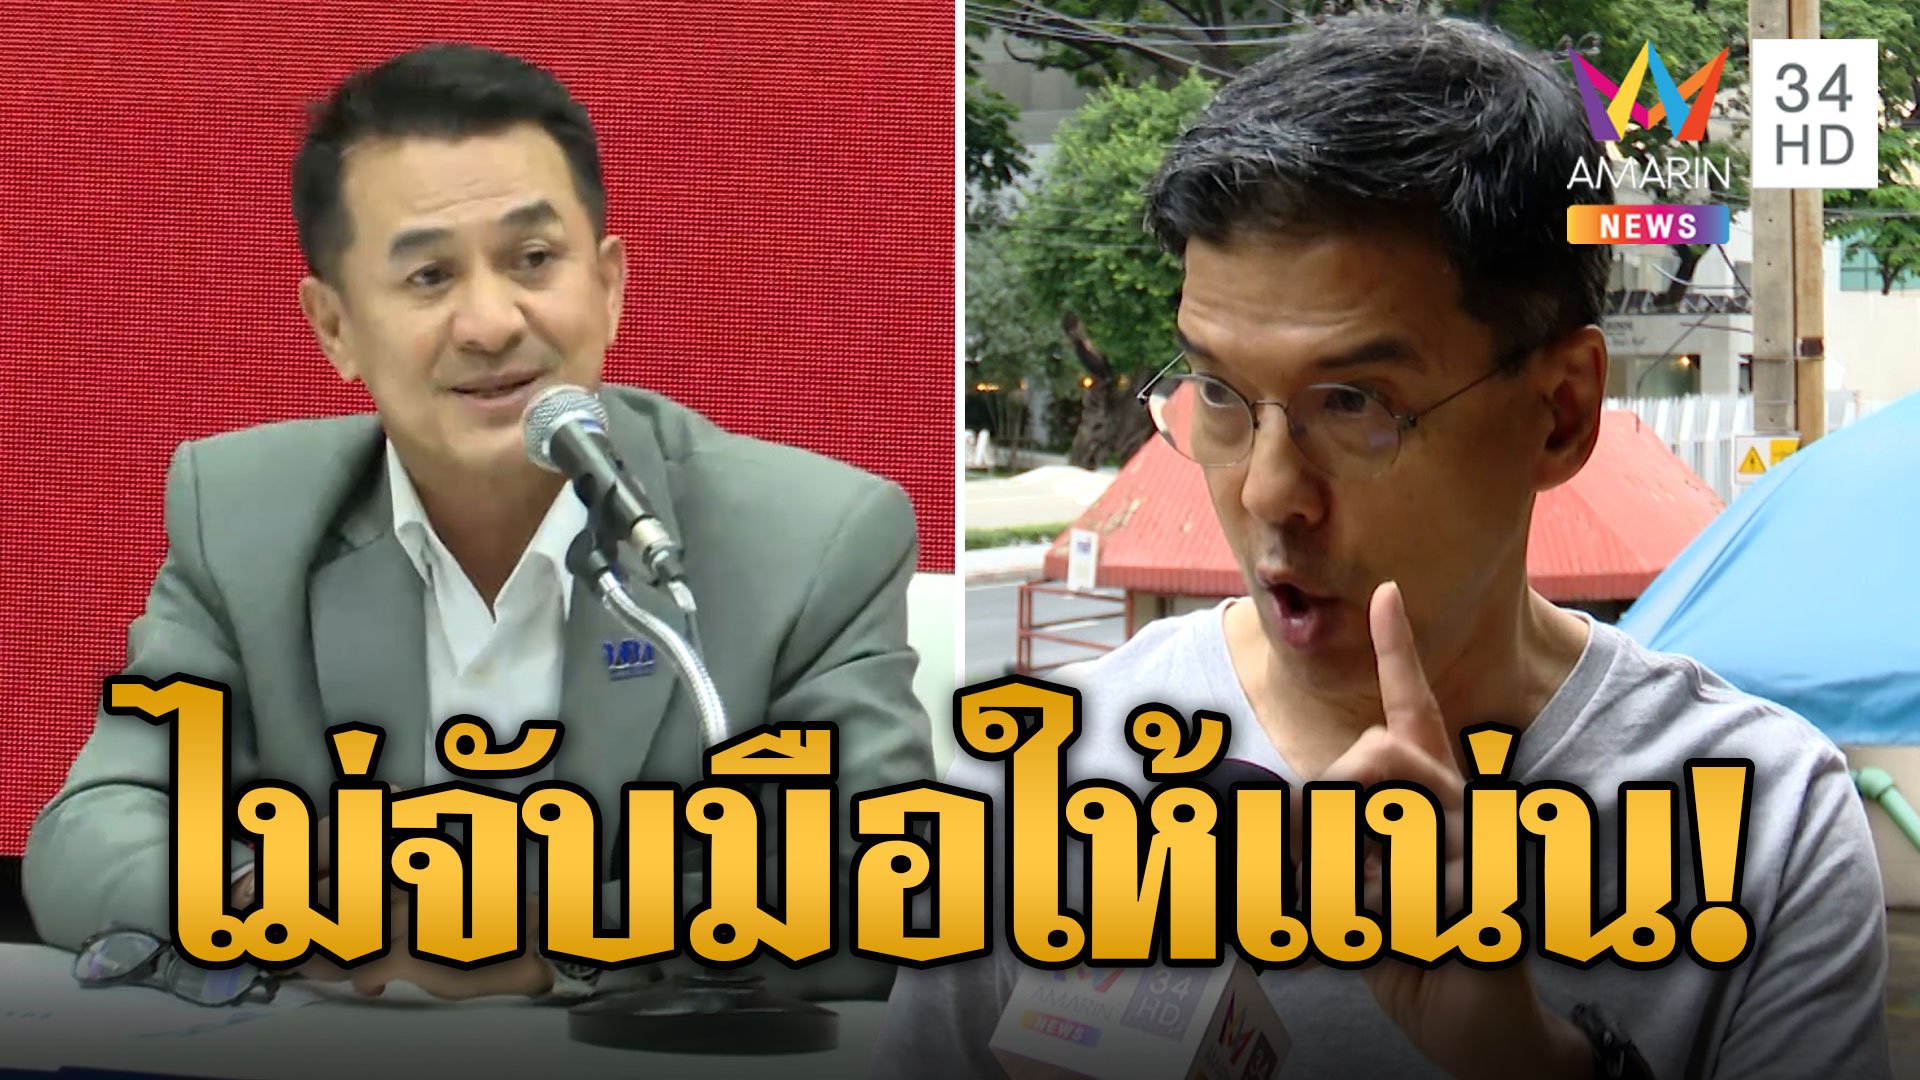 "ศิธา" ลั่นไทยสร้างไทยไม่จับมือพรรค 2 ลุง เสียดาย พท.ไม่จับมือให้แน่น  | ข่าวเที่ยงอมรินทร์ | 3 ส.ค. 66 | AMARIN TVHD34